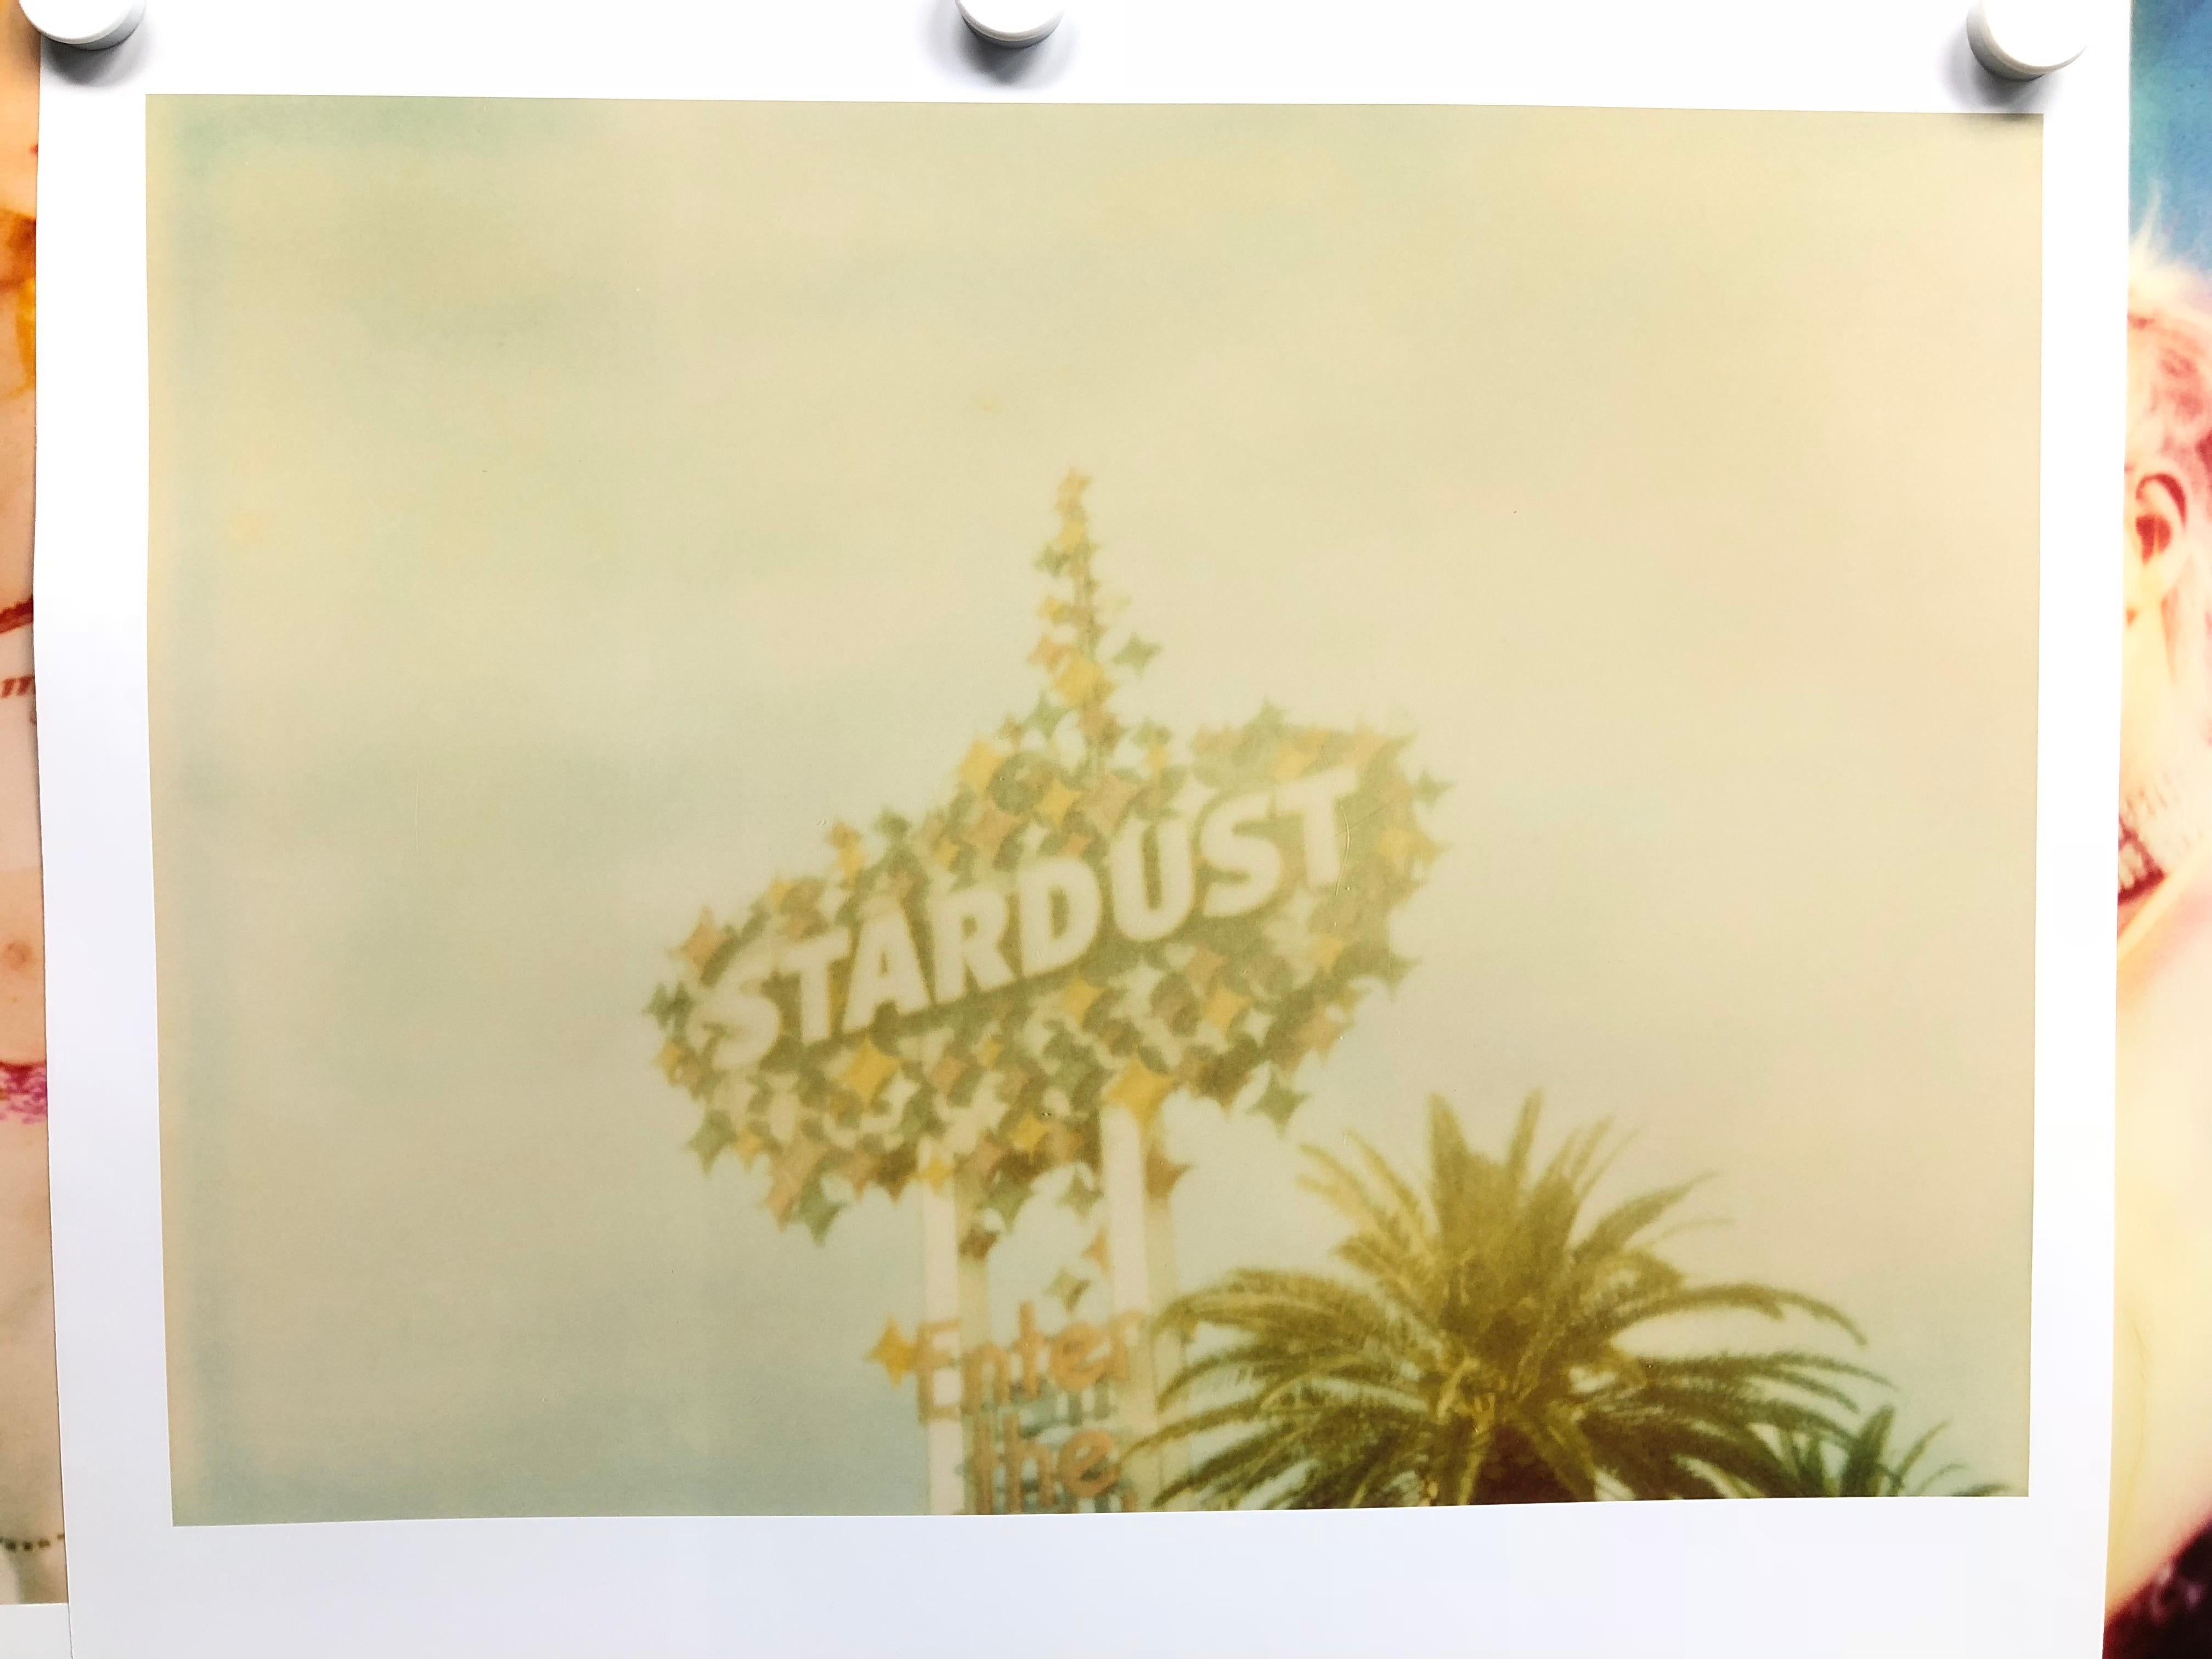 Stardust (Vegas) - analog, vintage print - Photograph by Stefanie Schneider